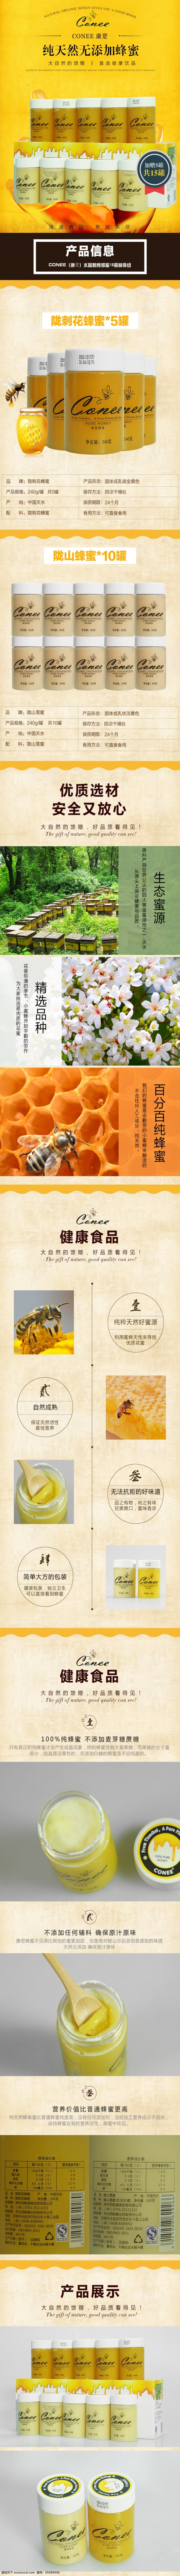 蜂蜜详情页 蜂蜜 纯蜂蜜 食品 洋槐蜜 固体蜂蜜 详情页 描述 白色